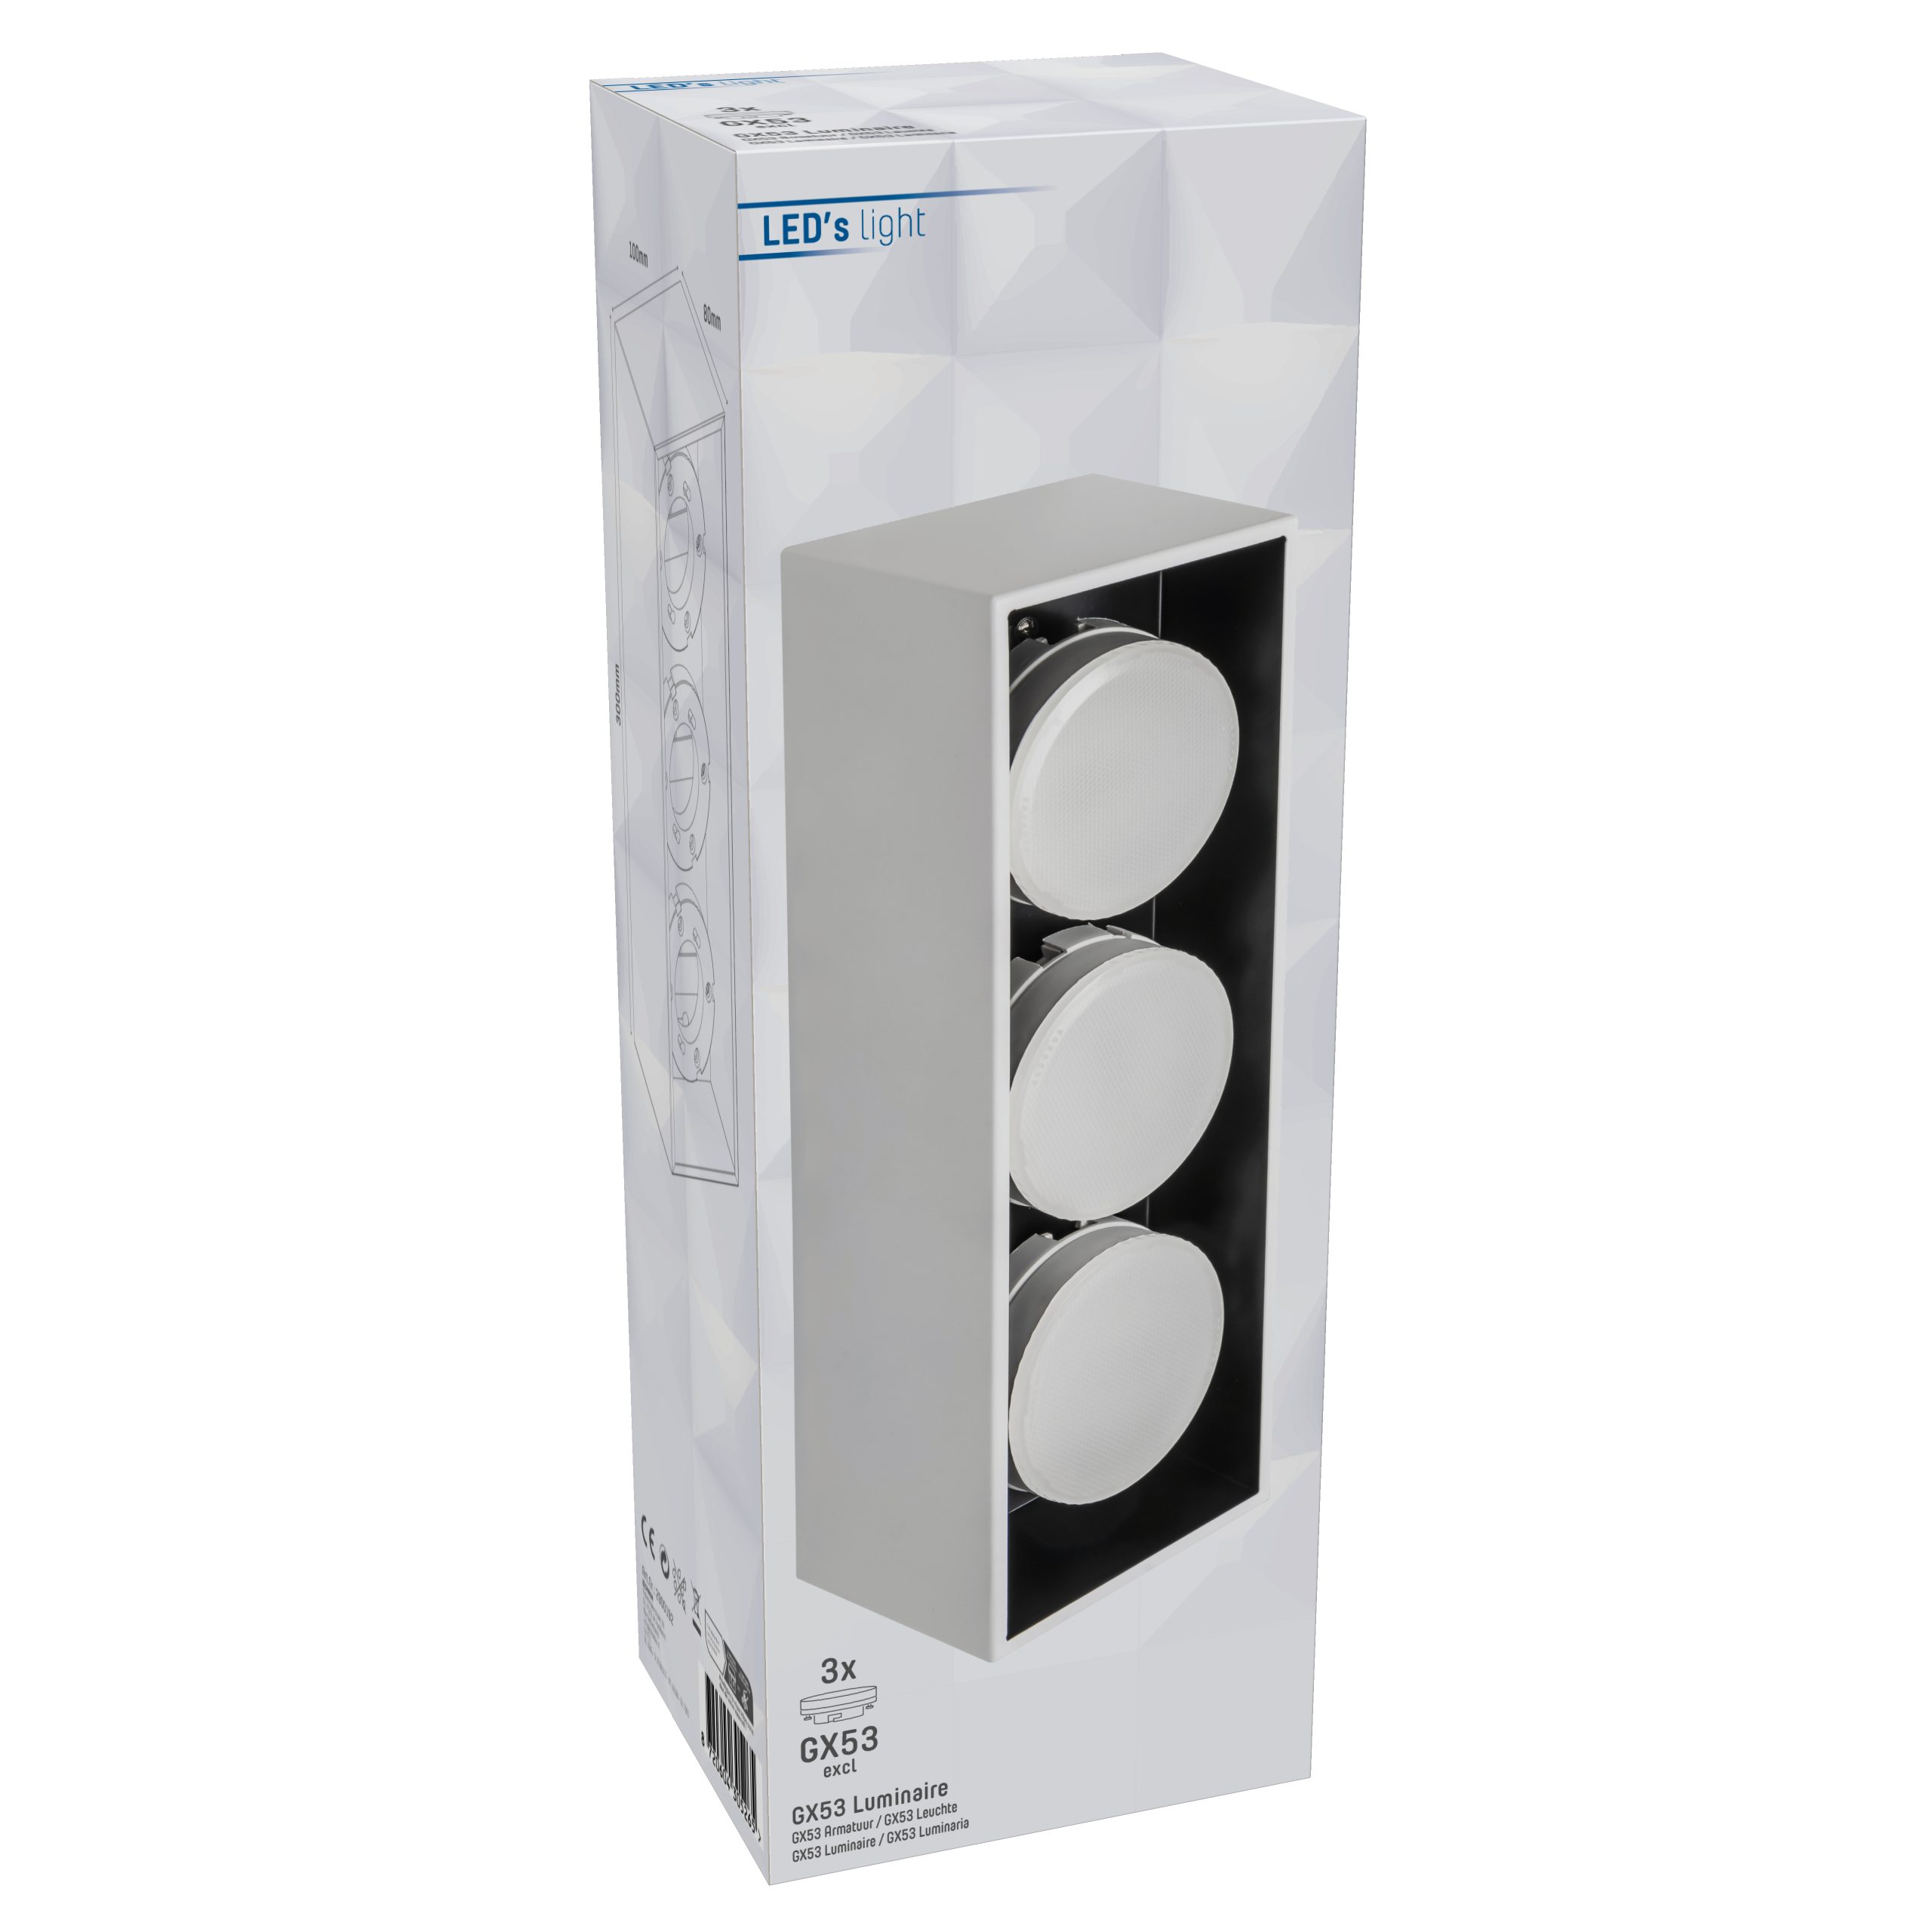 Deckenleuchte LED's 12W light GX53 weiß 2900192 3x LED Deckenleuchte, bis LED,